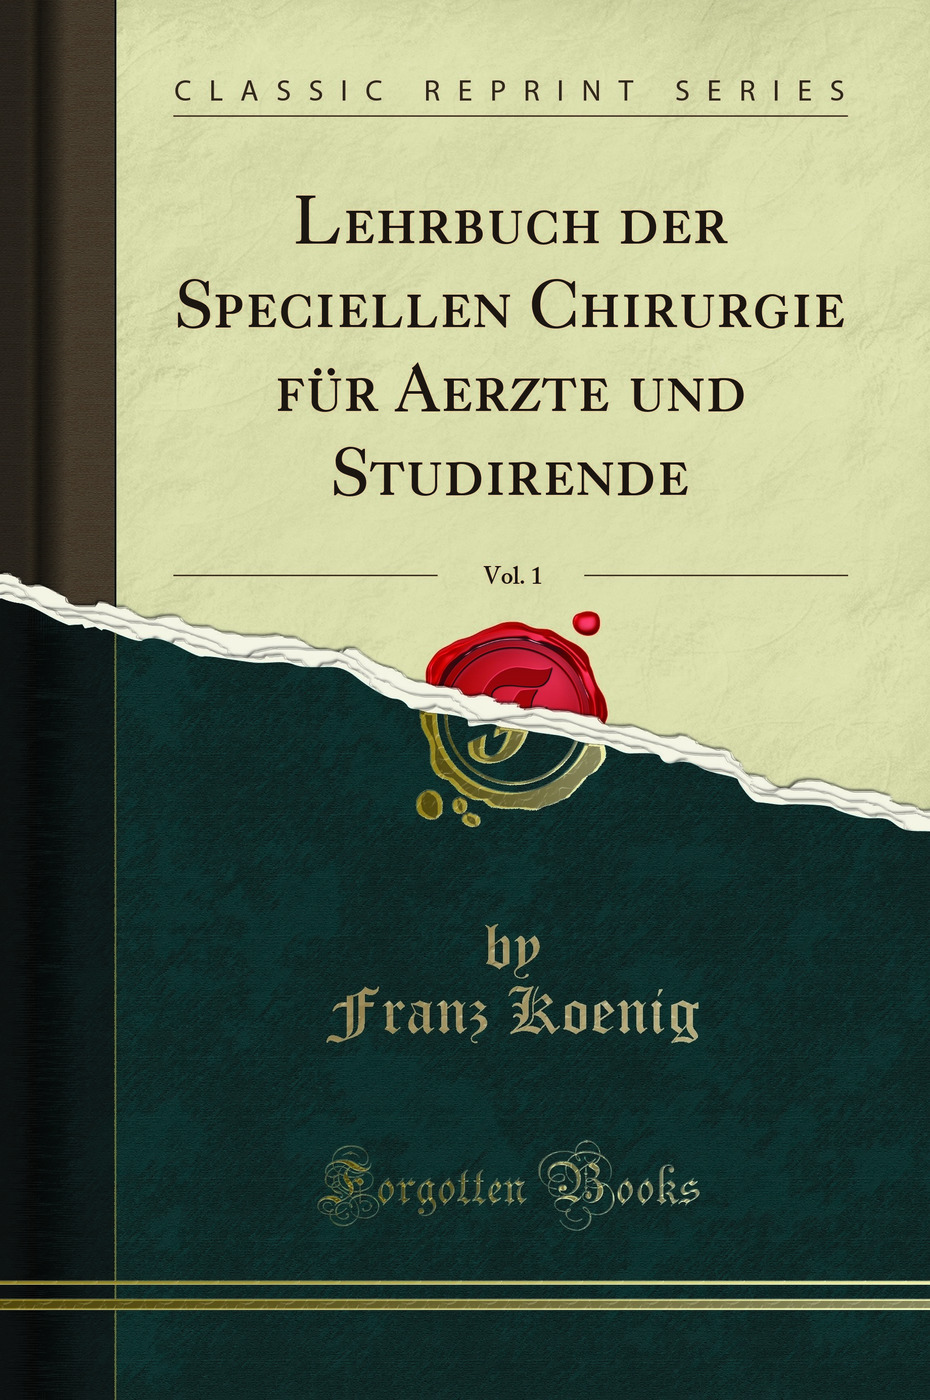 Lehrbuch der Speciellen Chirurgie fÃ¼r Aerzte und Studirende, Vol. 1 - Franz Koenig